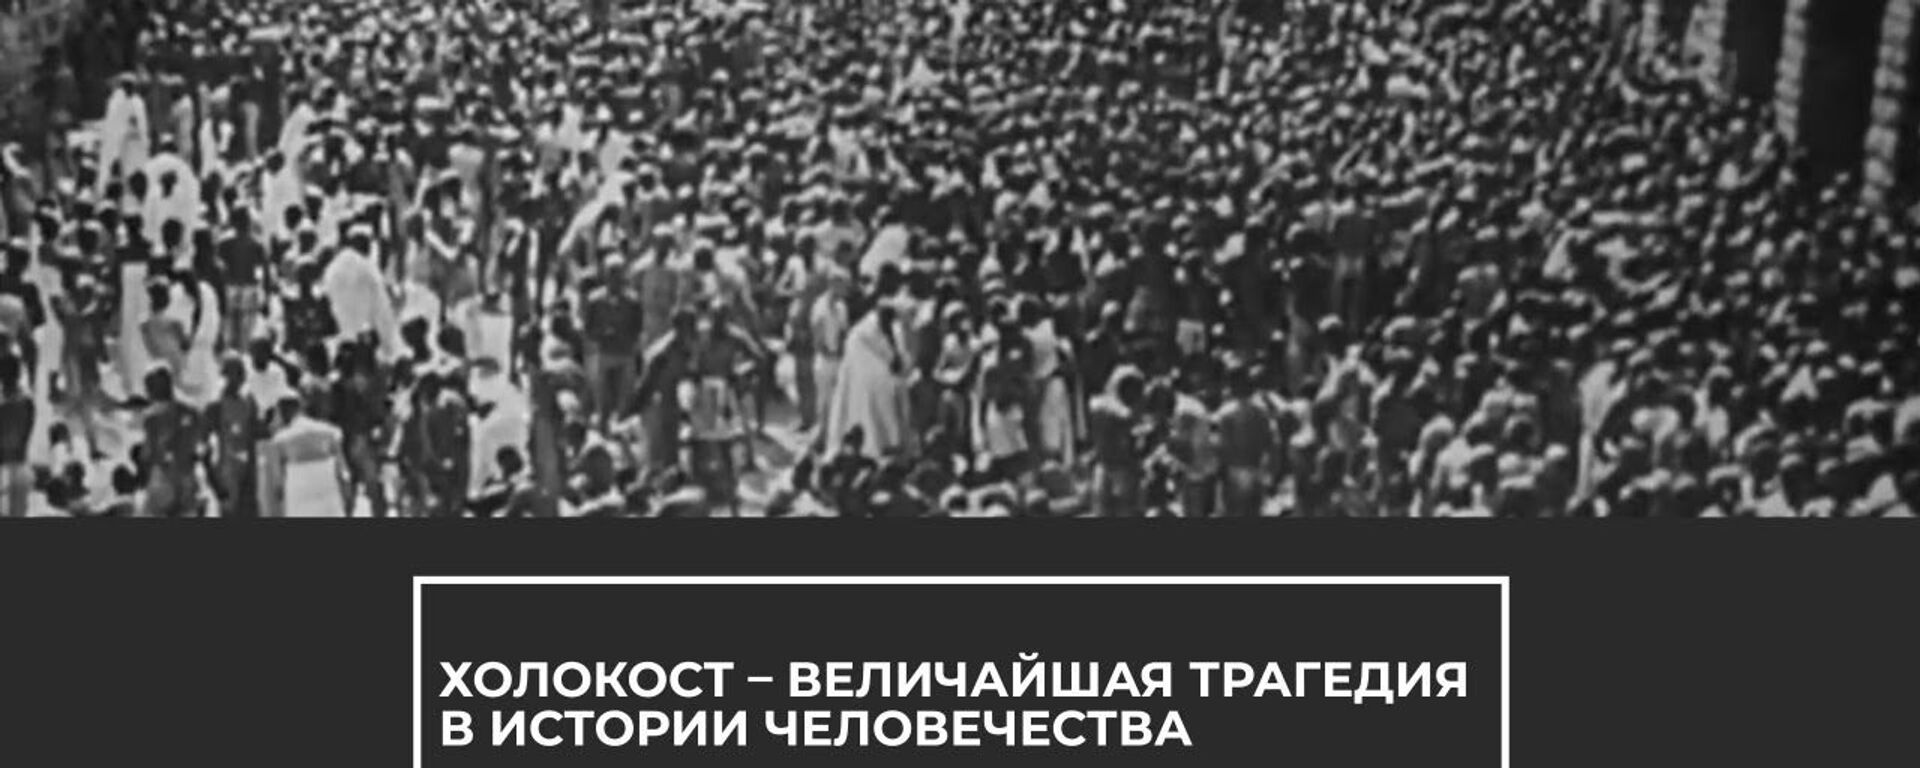 Нельзя забывать: сегодня День памяти жертв Холокоста - Sputnik Latvija, 1920, 28.01.2021